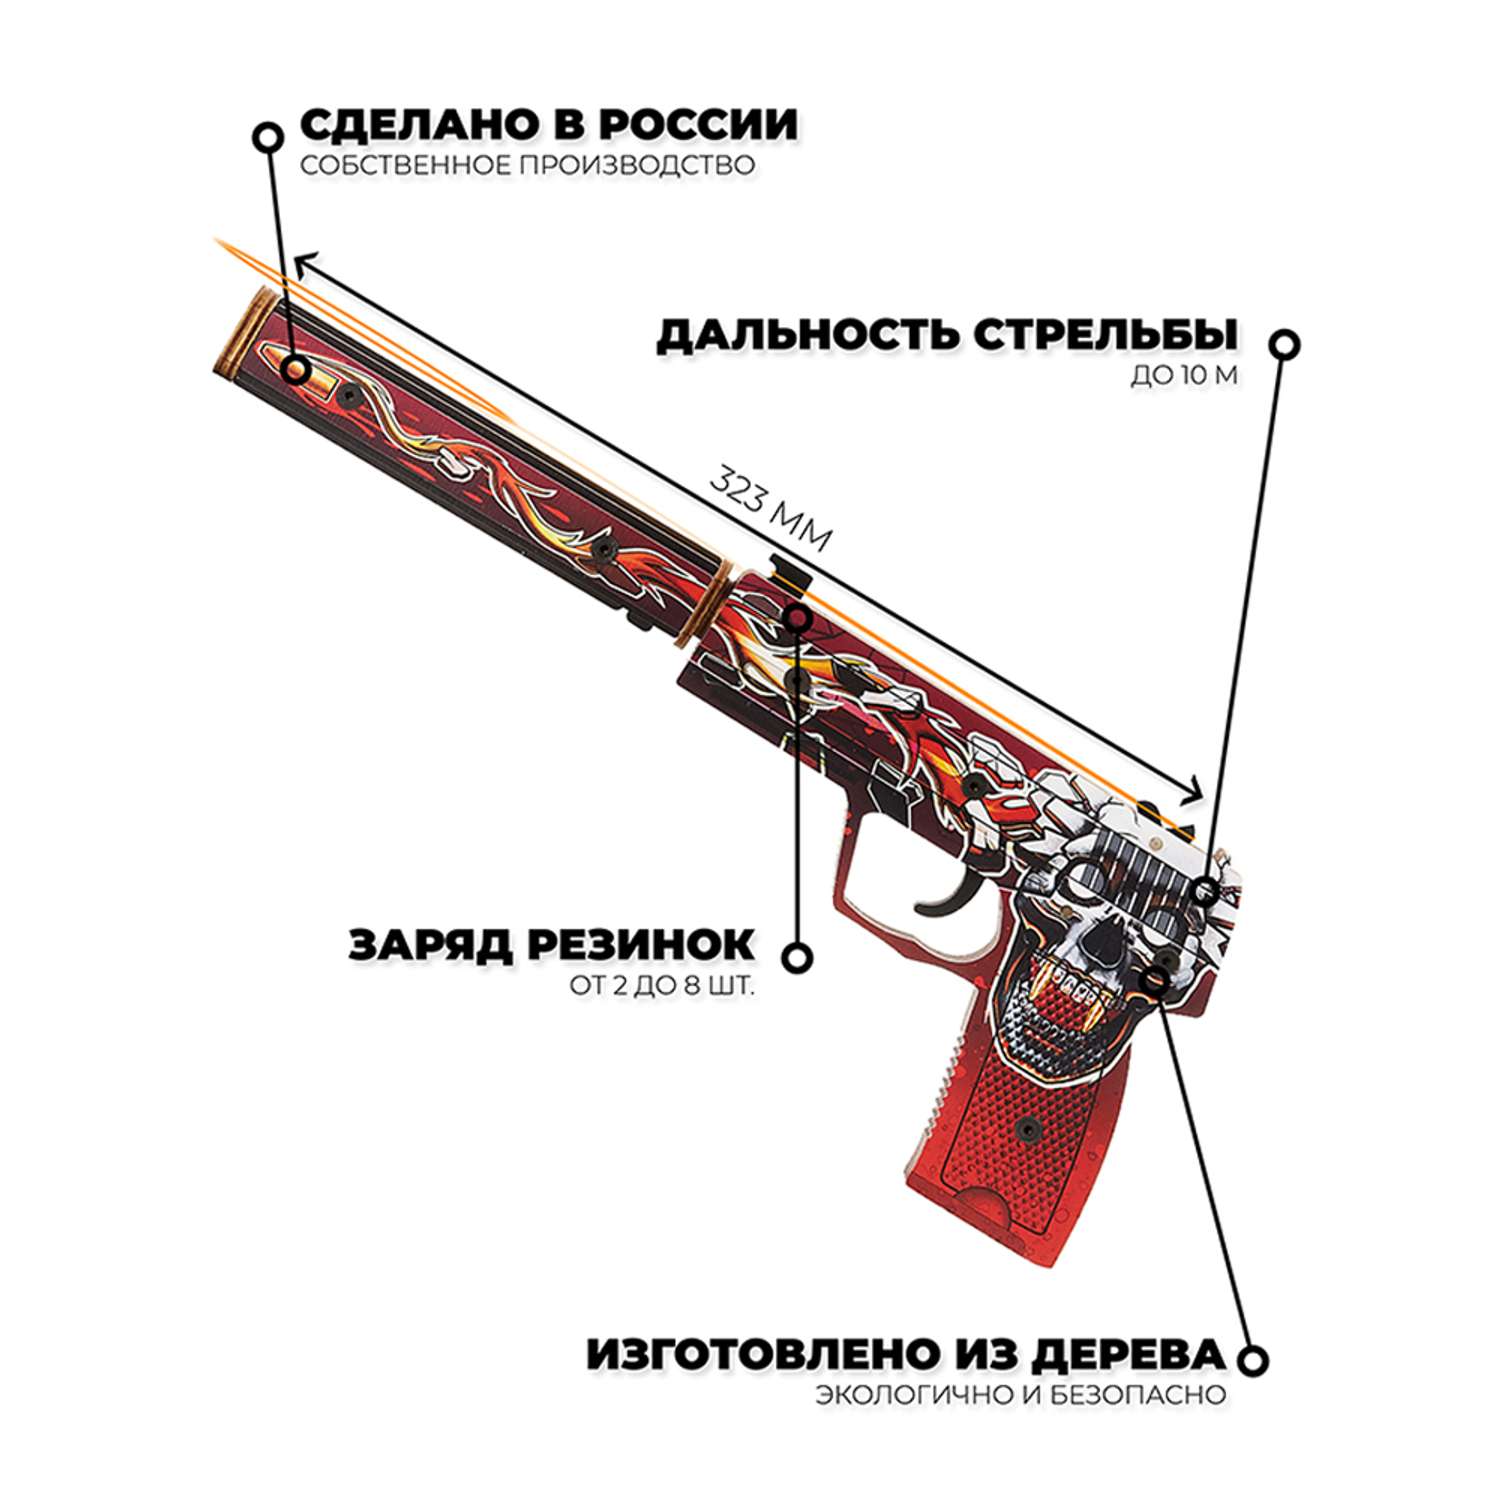 Игрушечный пистолет Go-Wood USP-S версия 1.6 Убийство Подтверждено деревянный резинкострел - фото 2